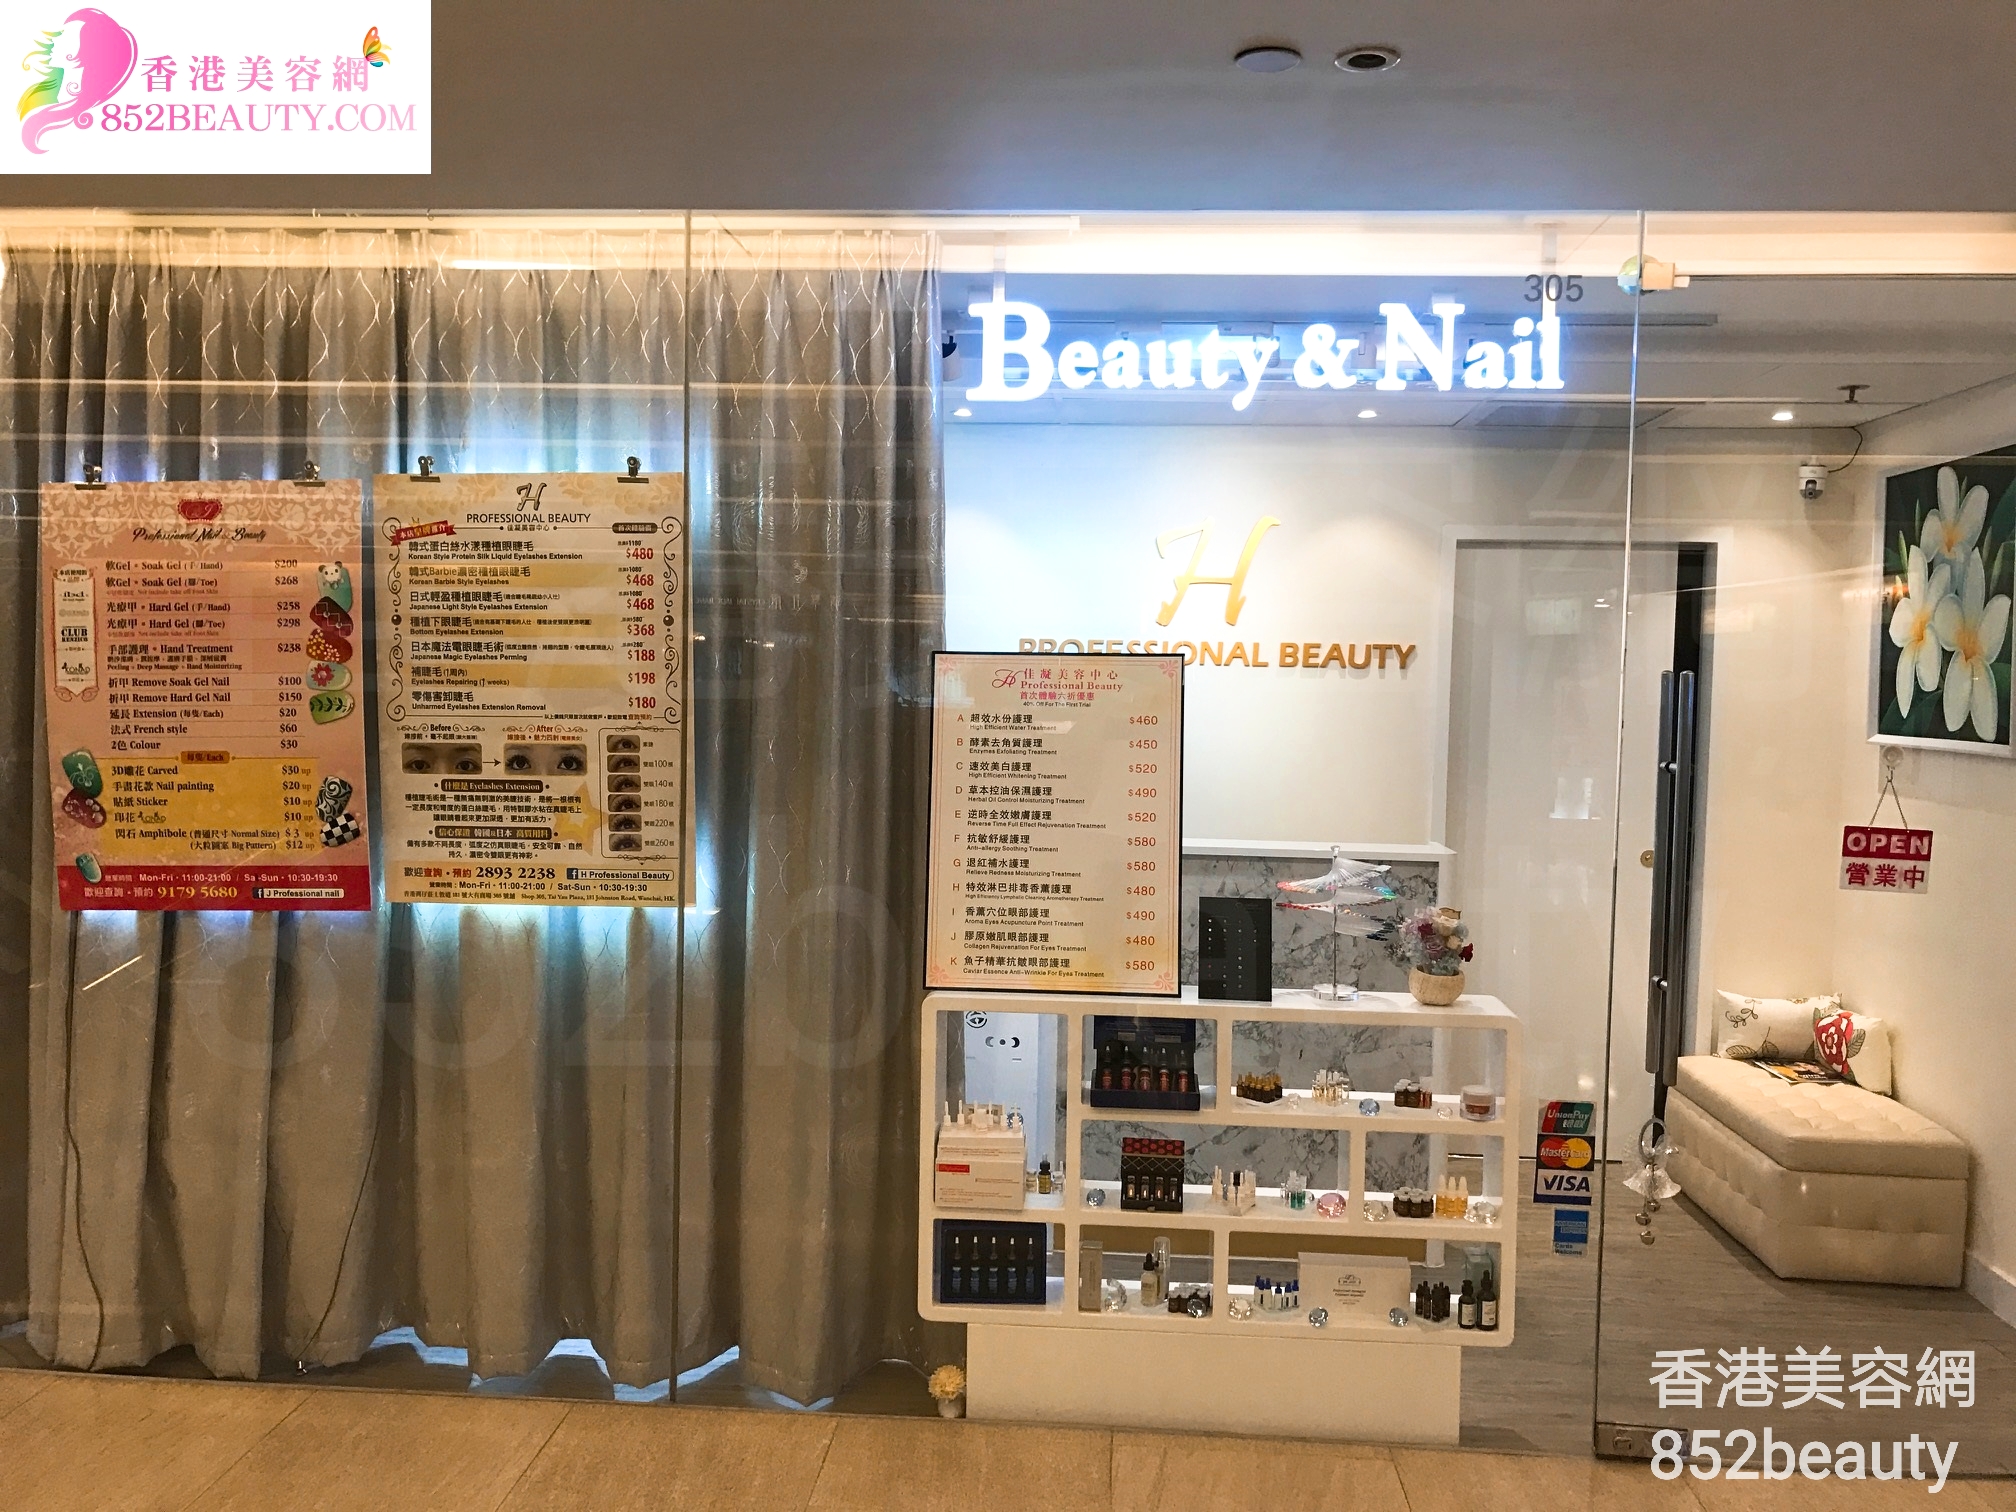 美容院 Beauty Salon: H professional Beauty & Nail